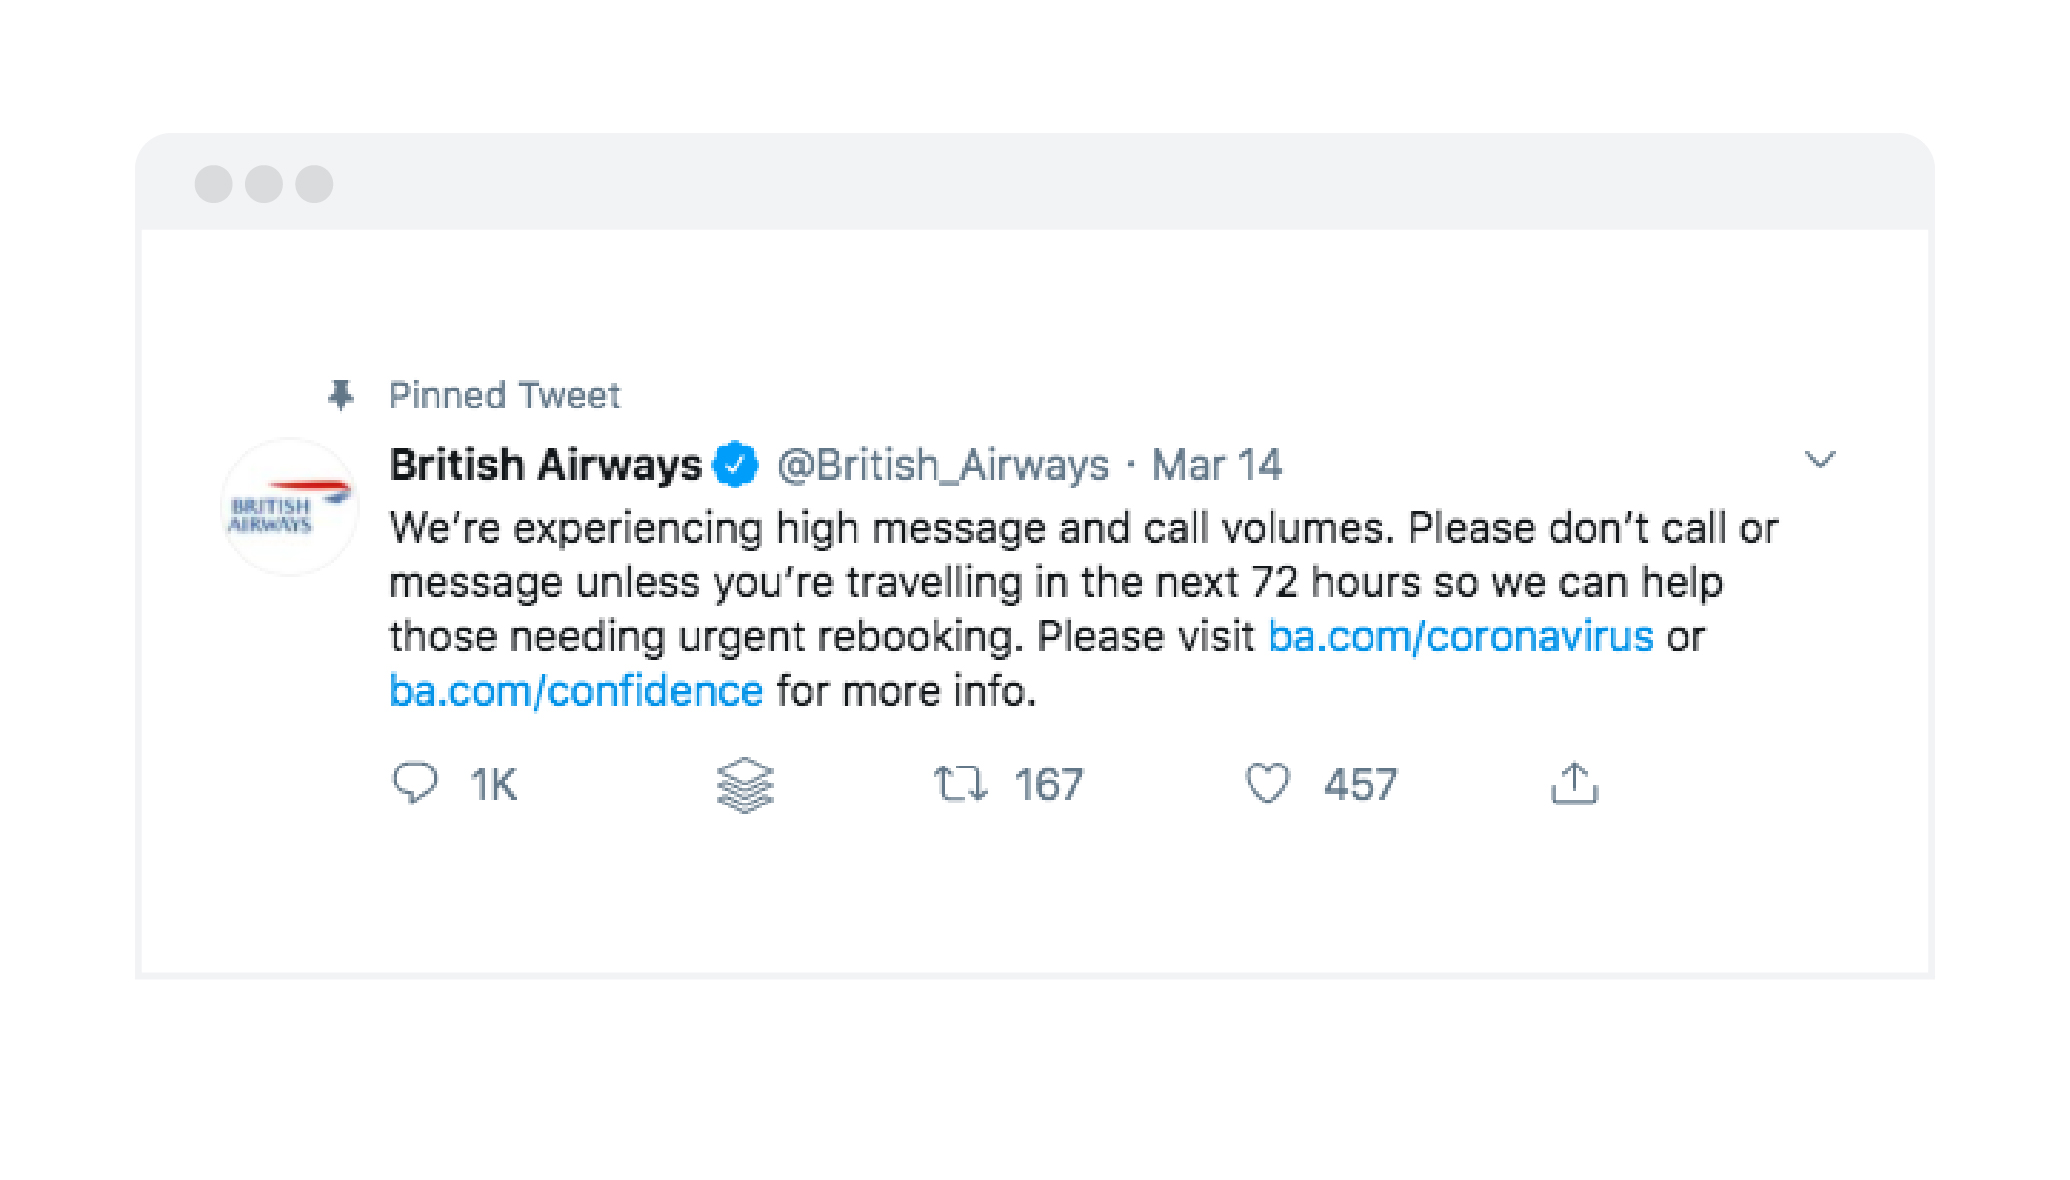 British Airways pinned tweet